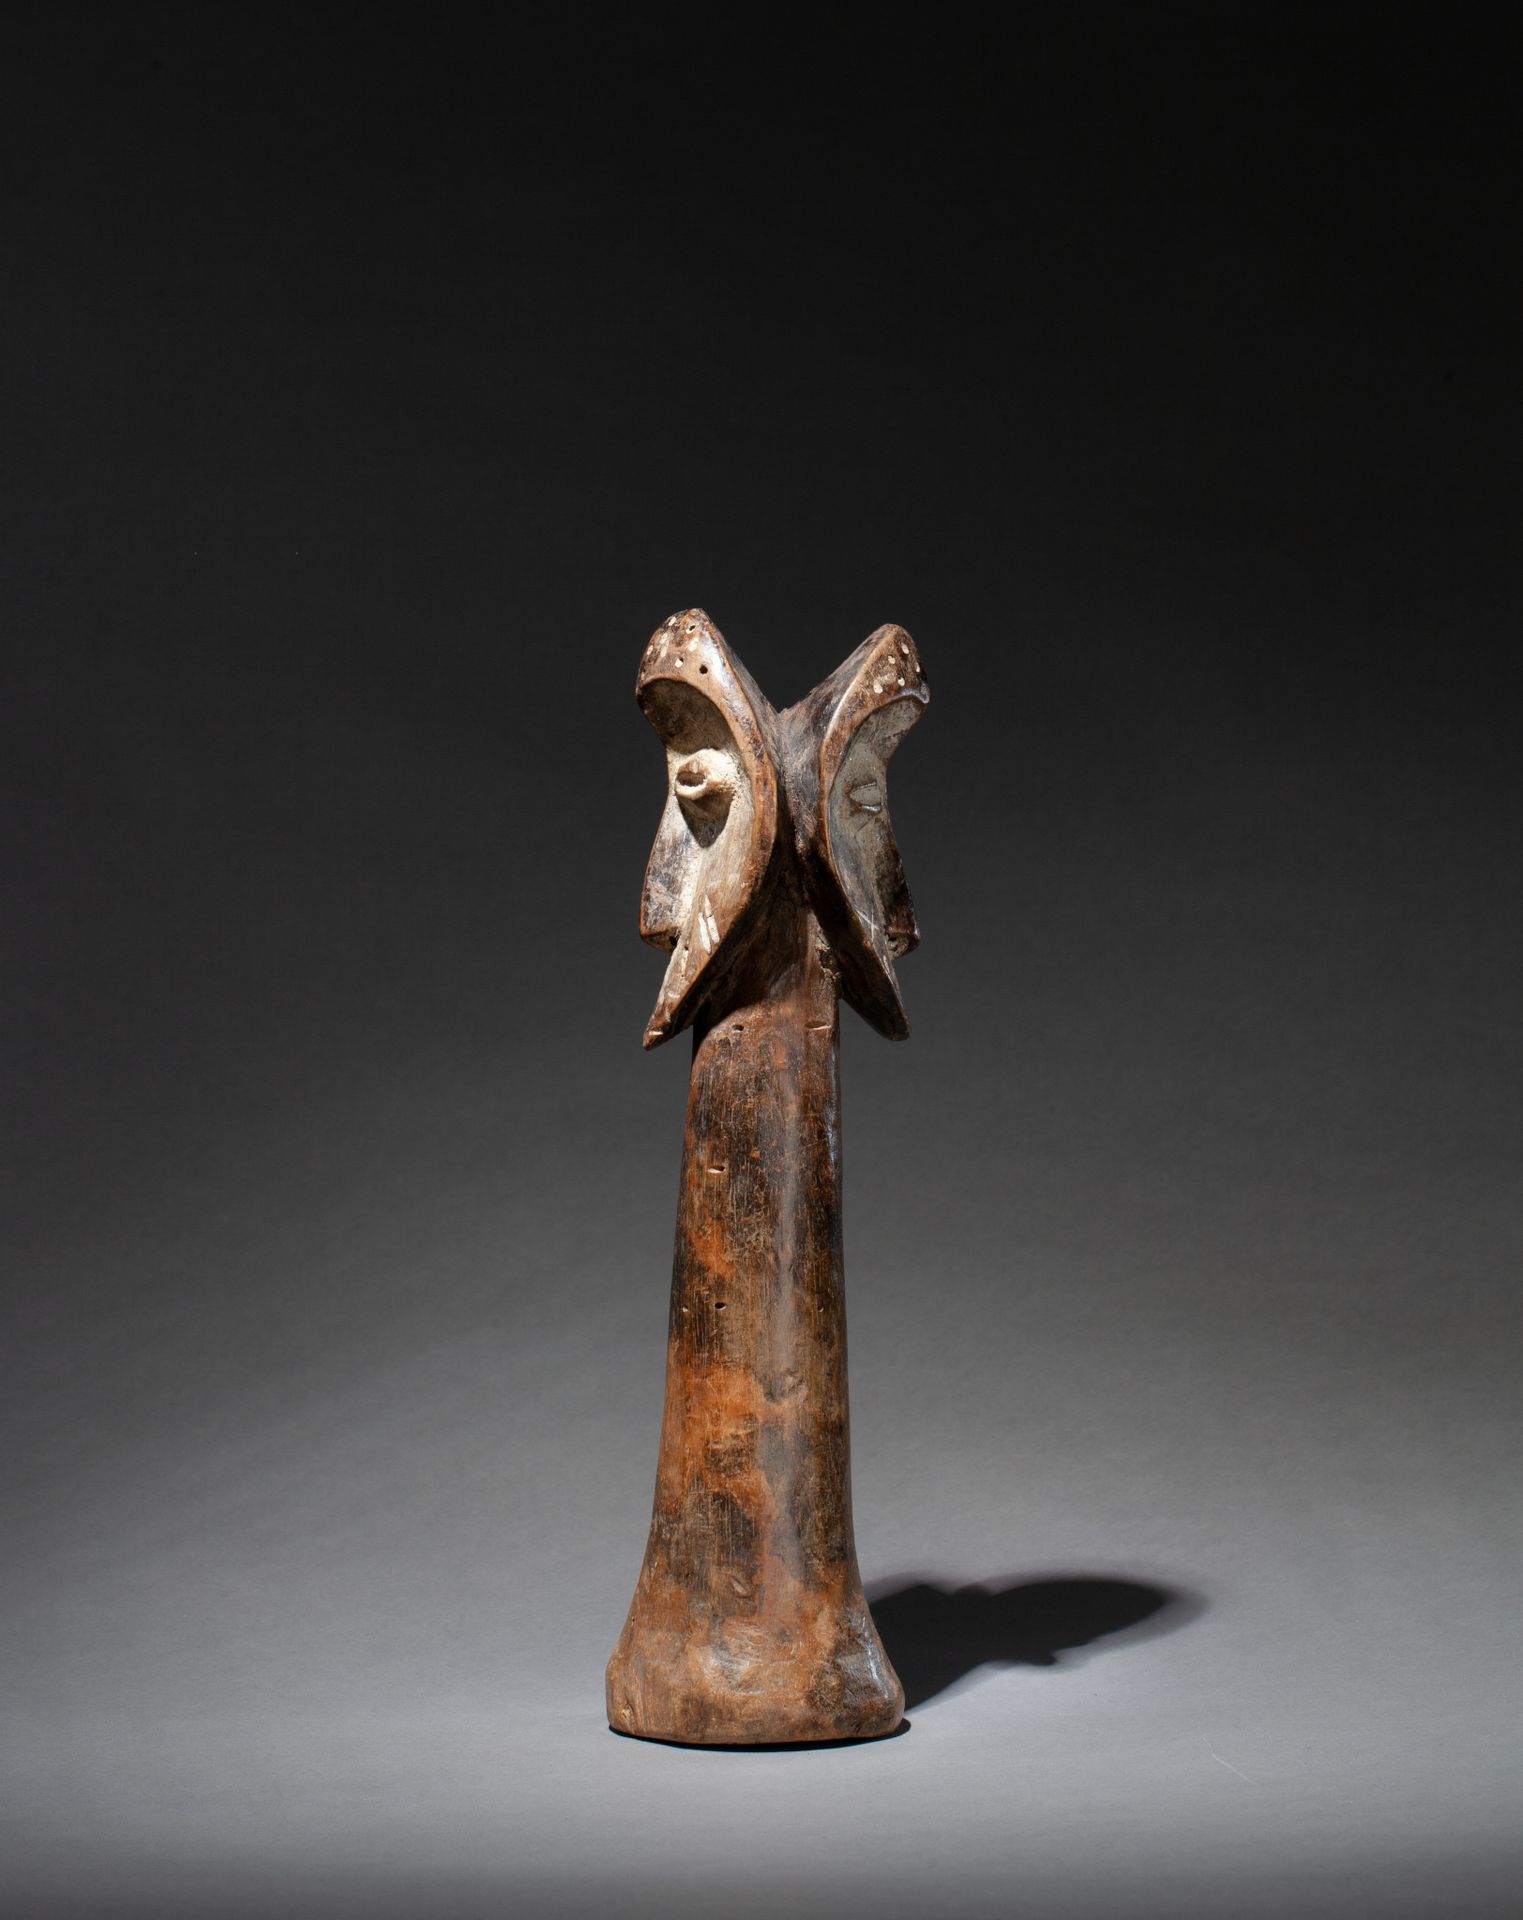 Figure janus 熟练地雕刻着两个有长鼻子和咖啡豆眼睛的等级面具。 

木头，使用过的蜂蜜的旧色泽，残留的松脂。

Lega，刚果民主共和国，20世纪上&hellip;